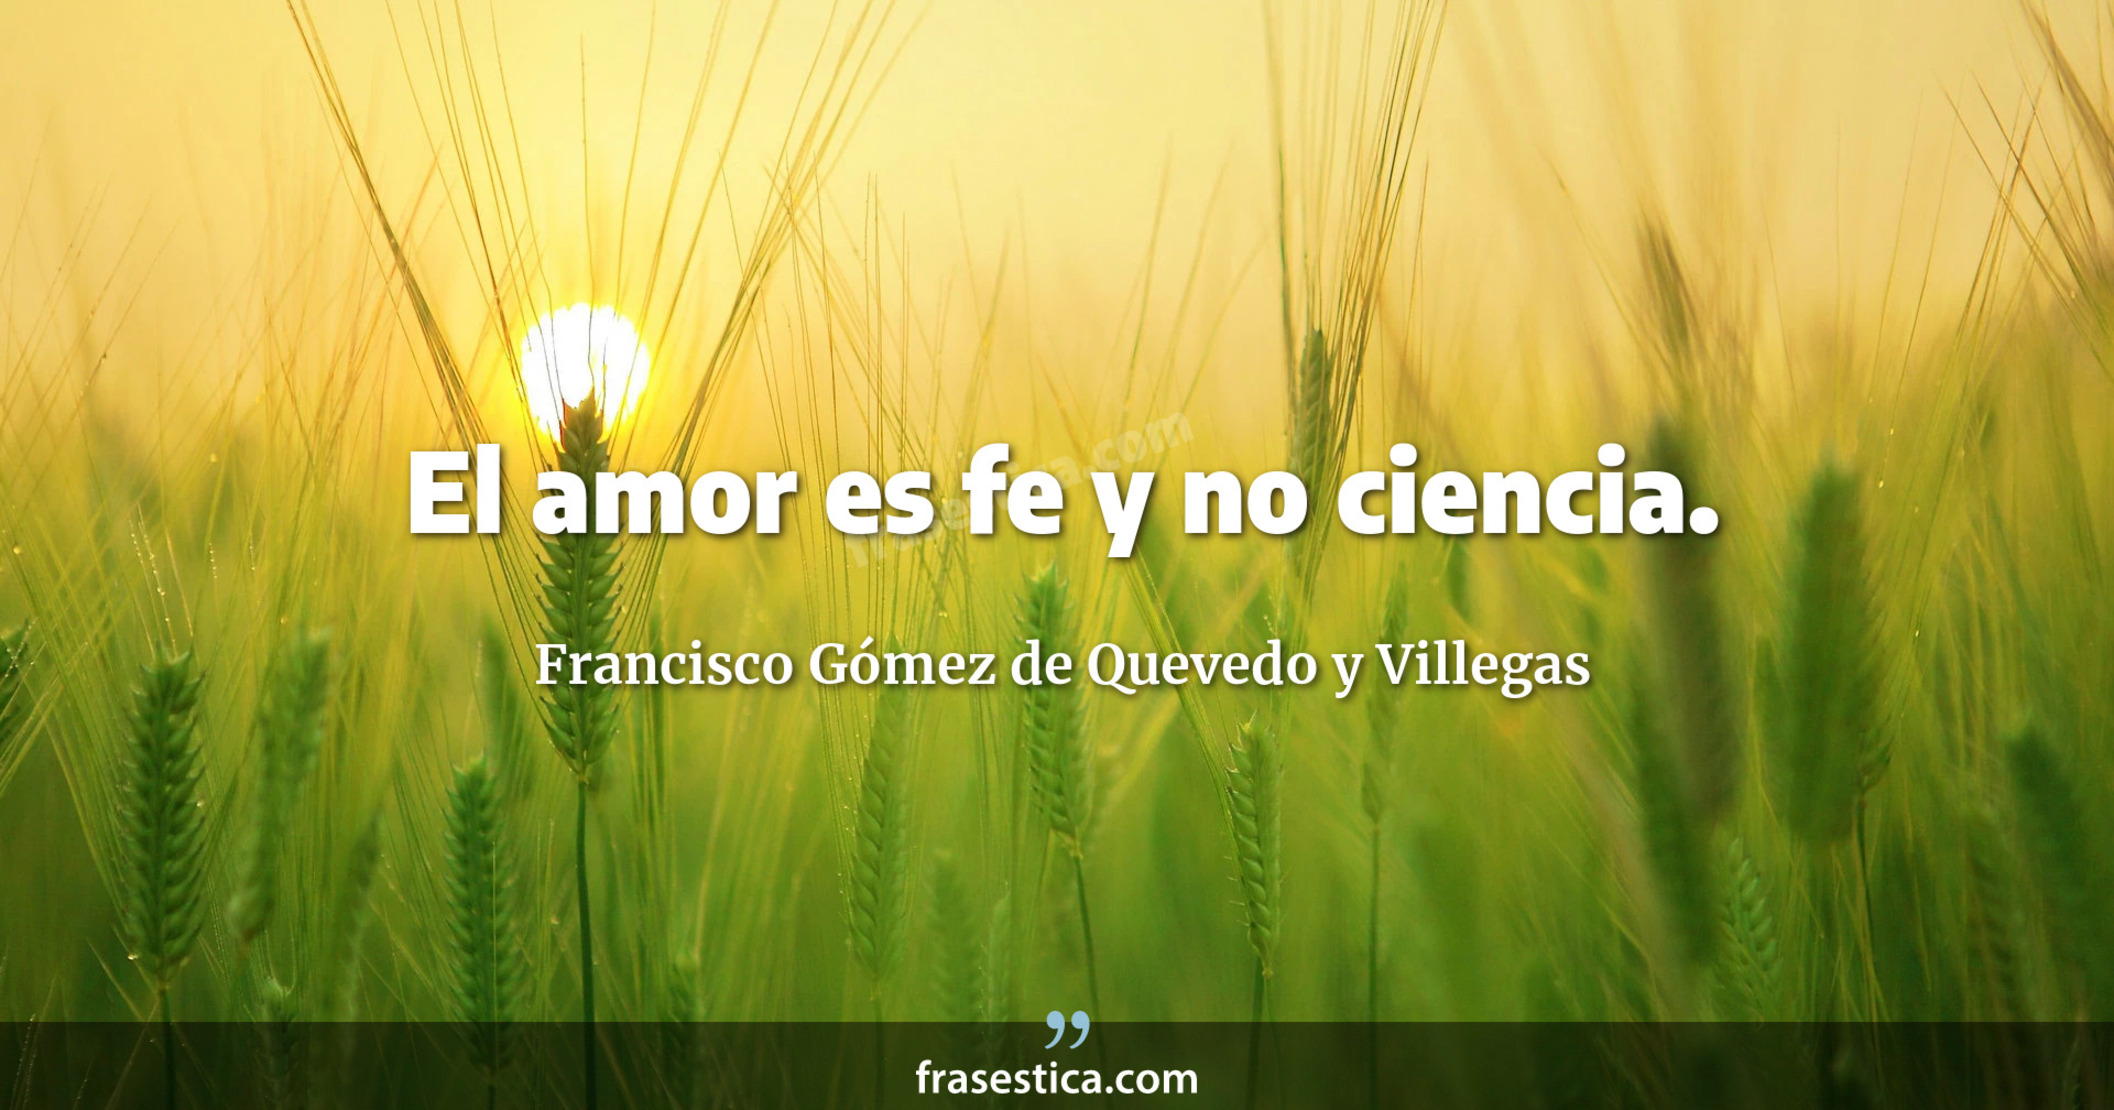 El amor es fe y no ciencia. - Francisco Gómez de Quevedo y Villegas